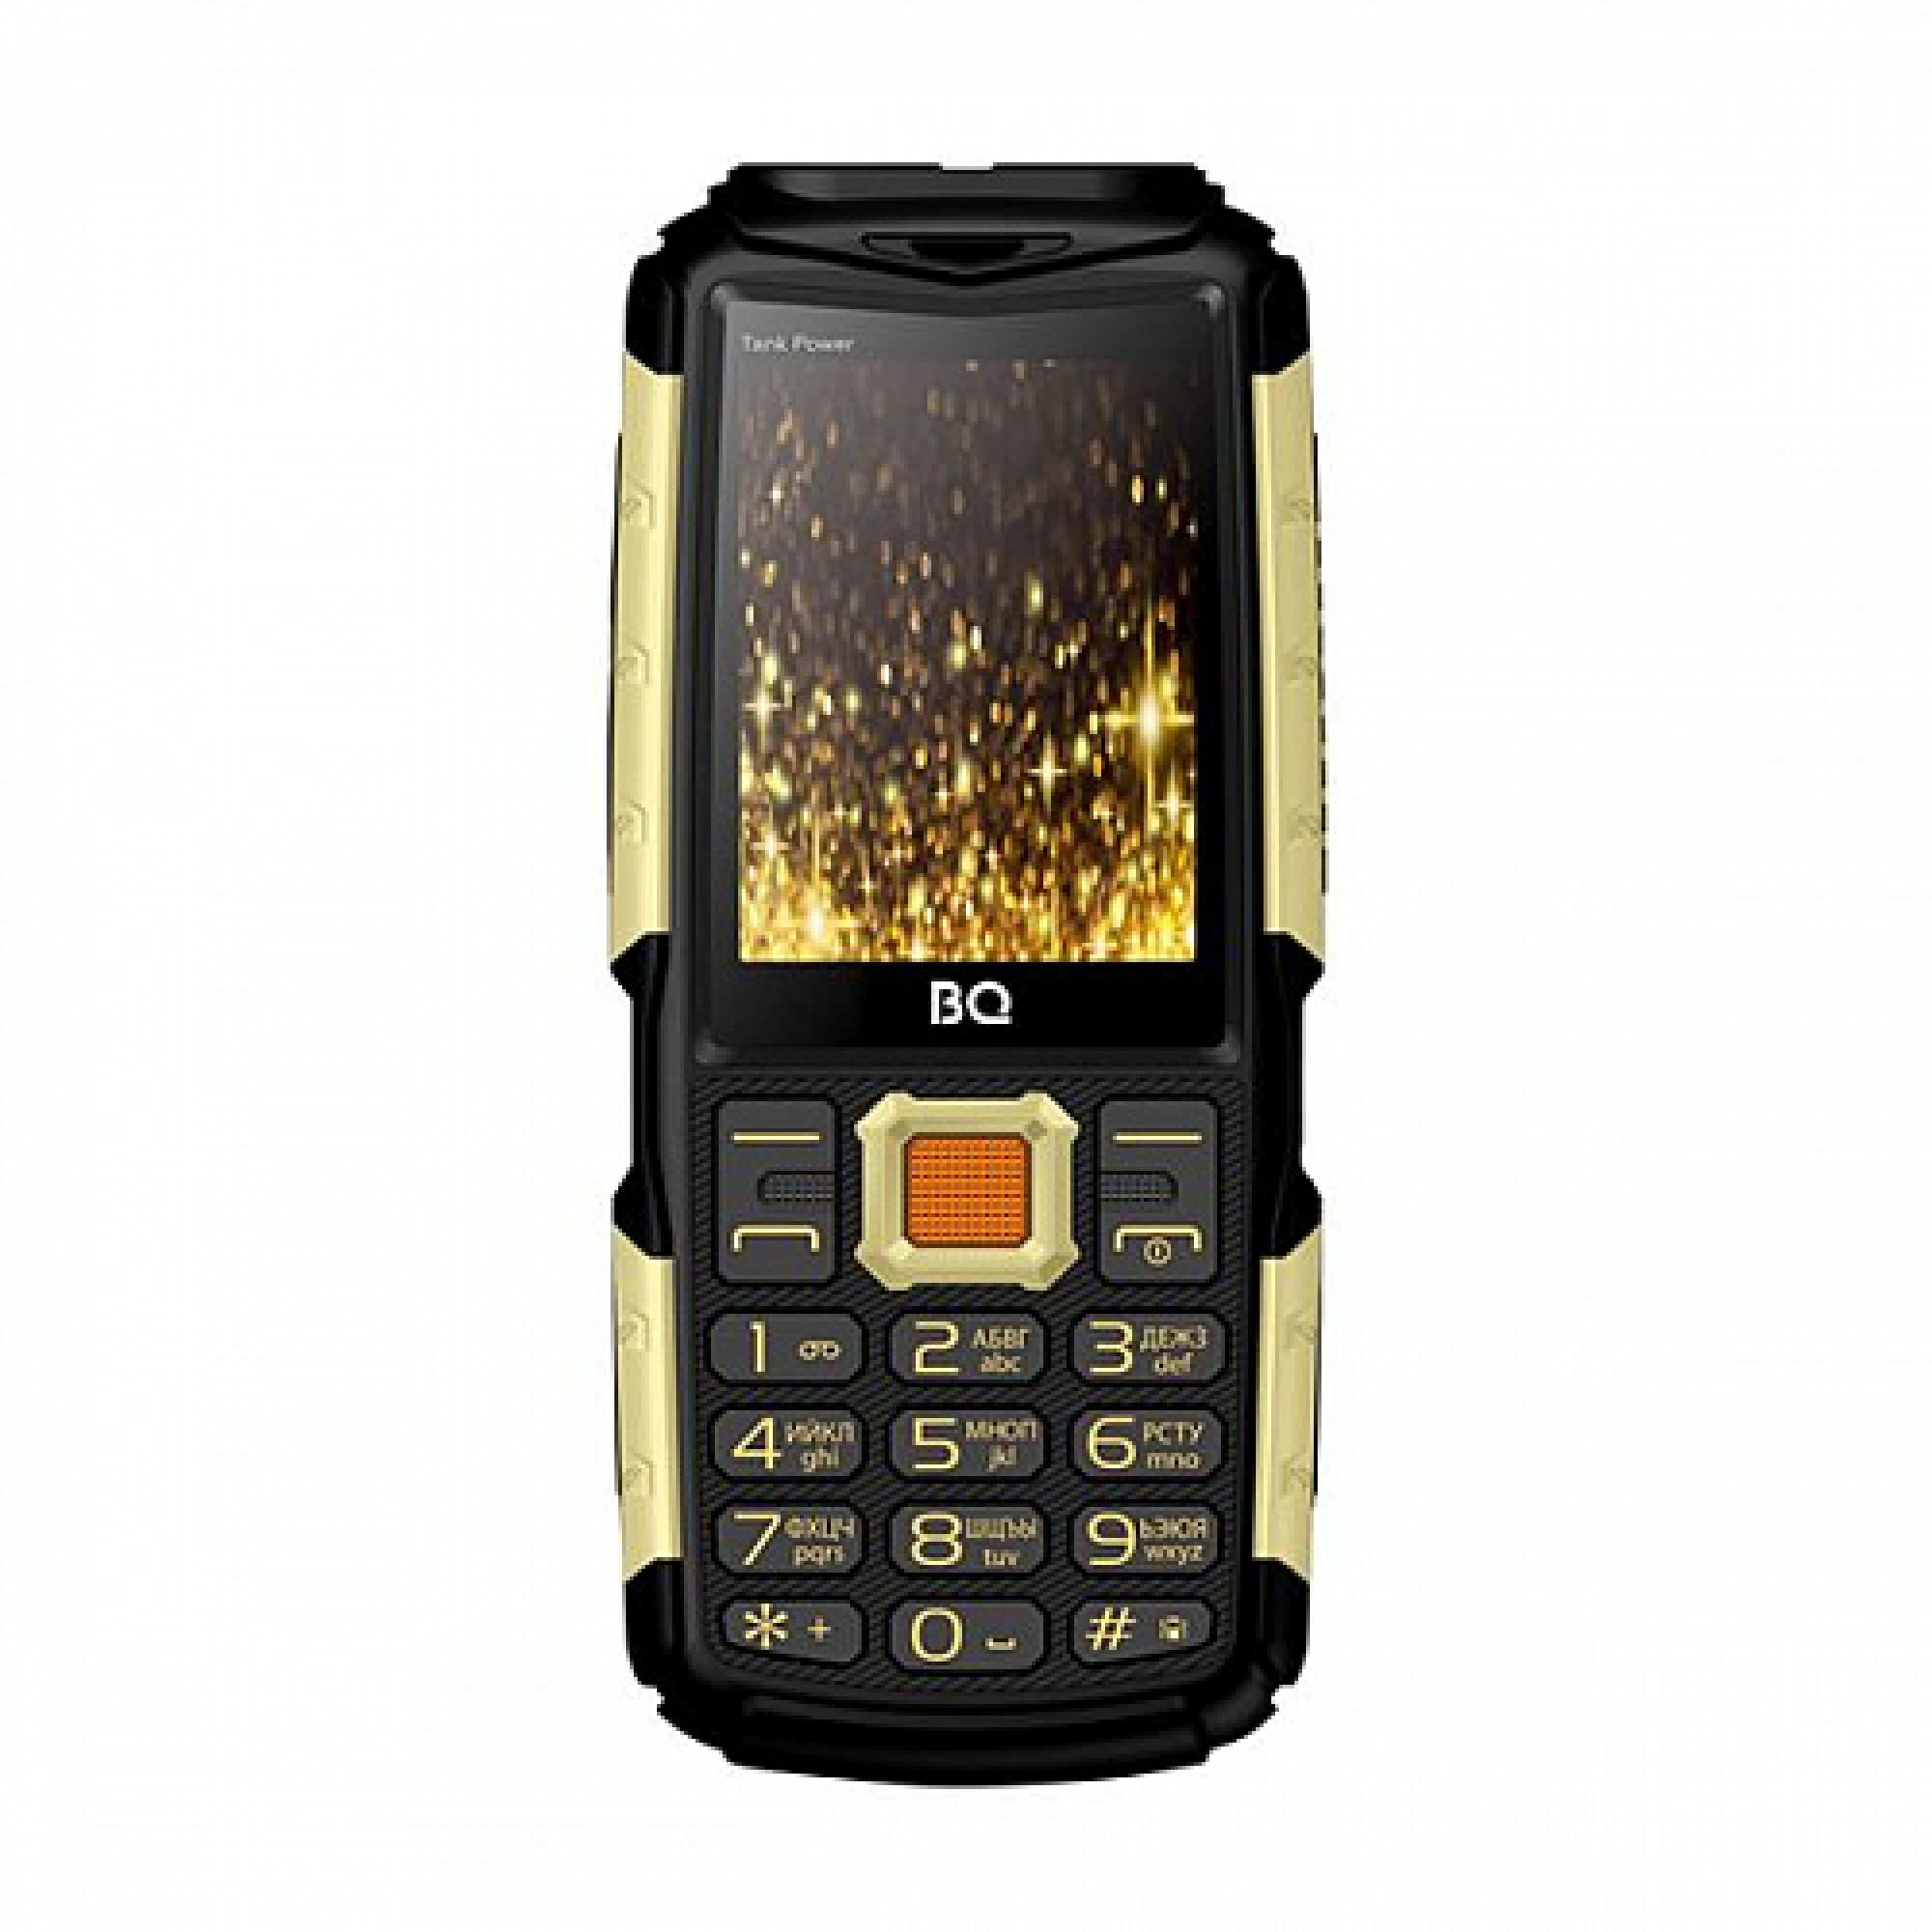 Мобильный телефон BQ Tank Power (BQ-2430) Черный/золотистый